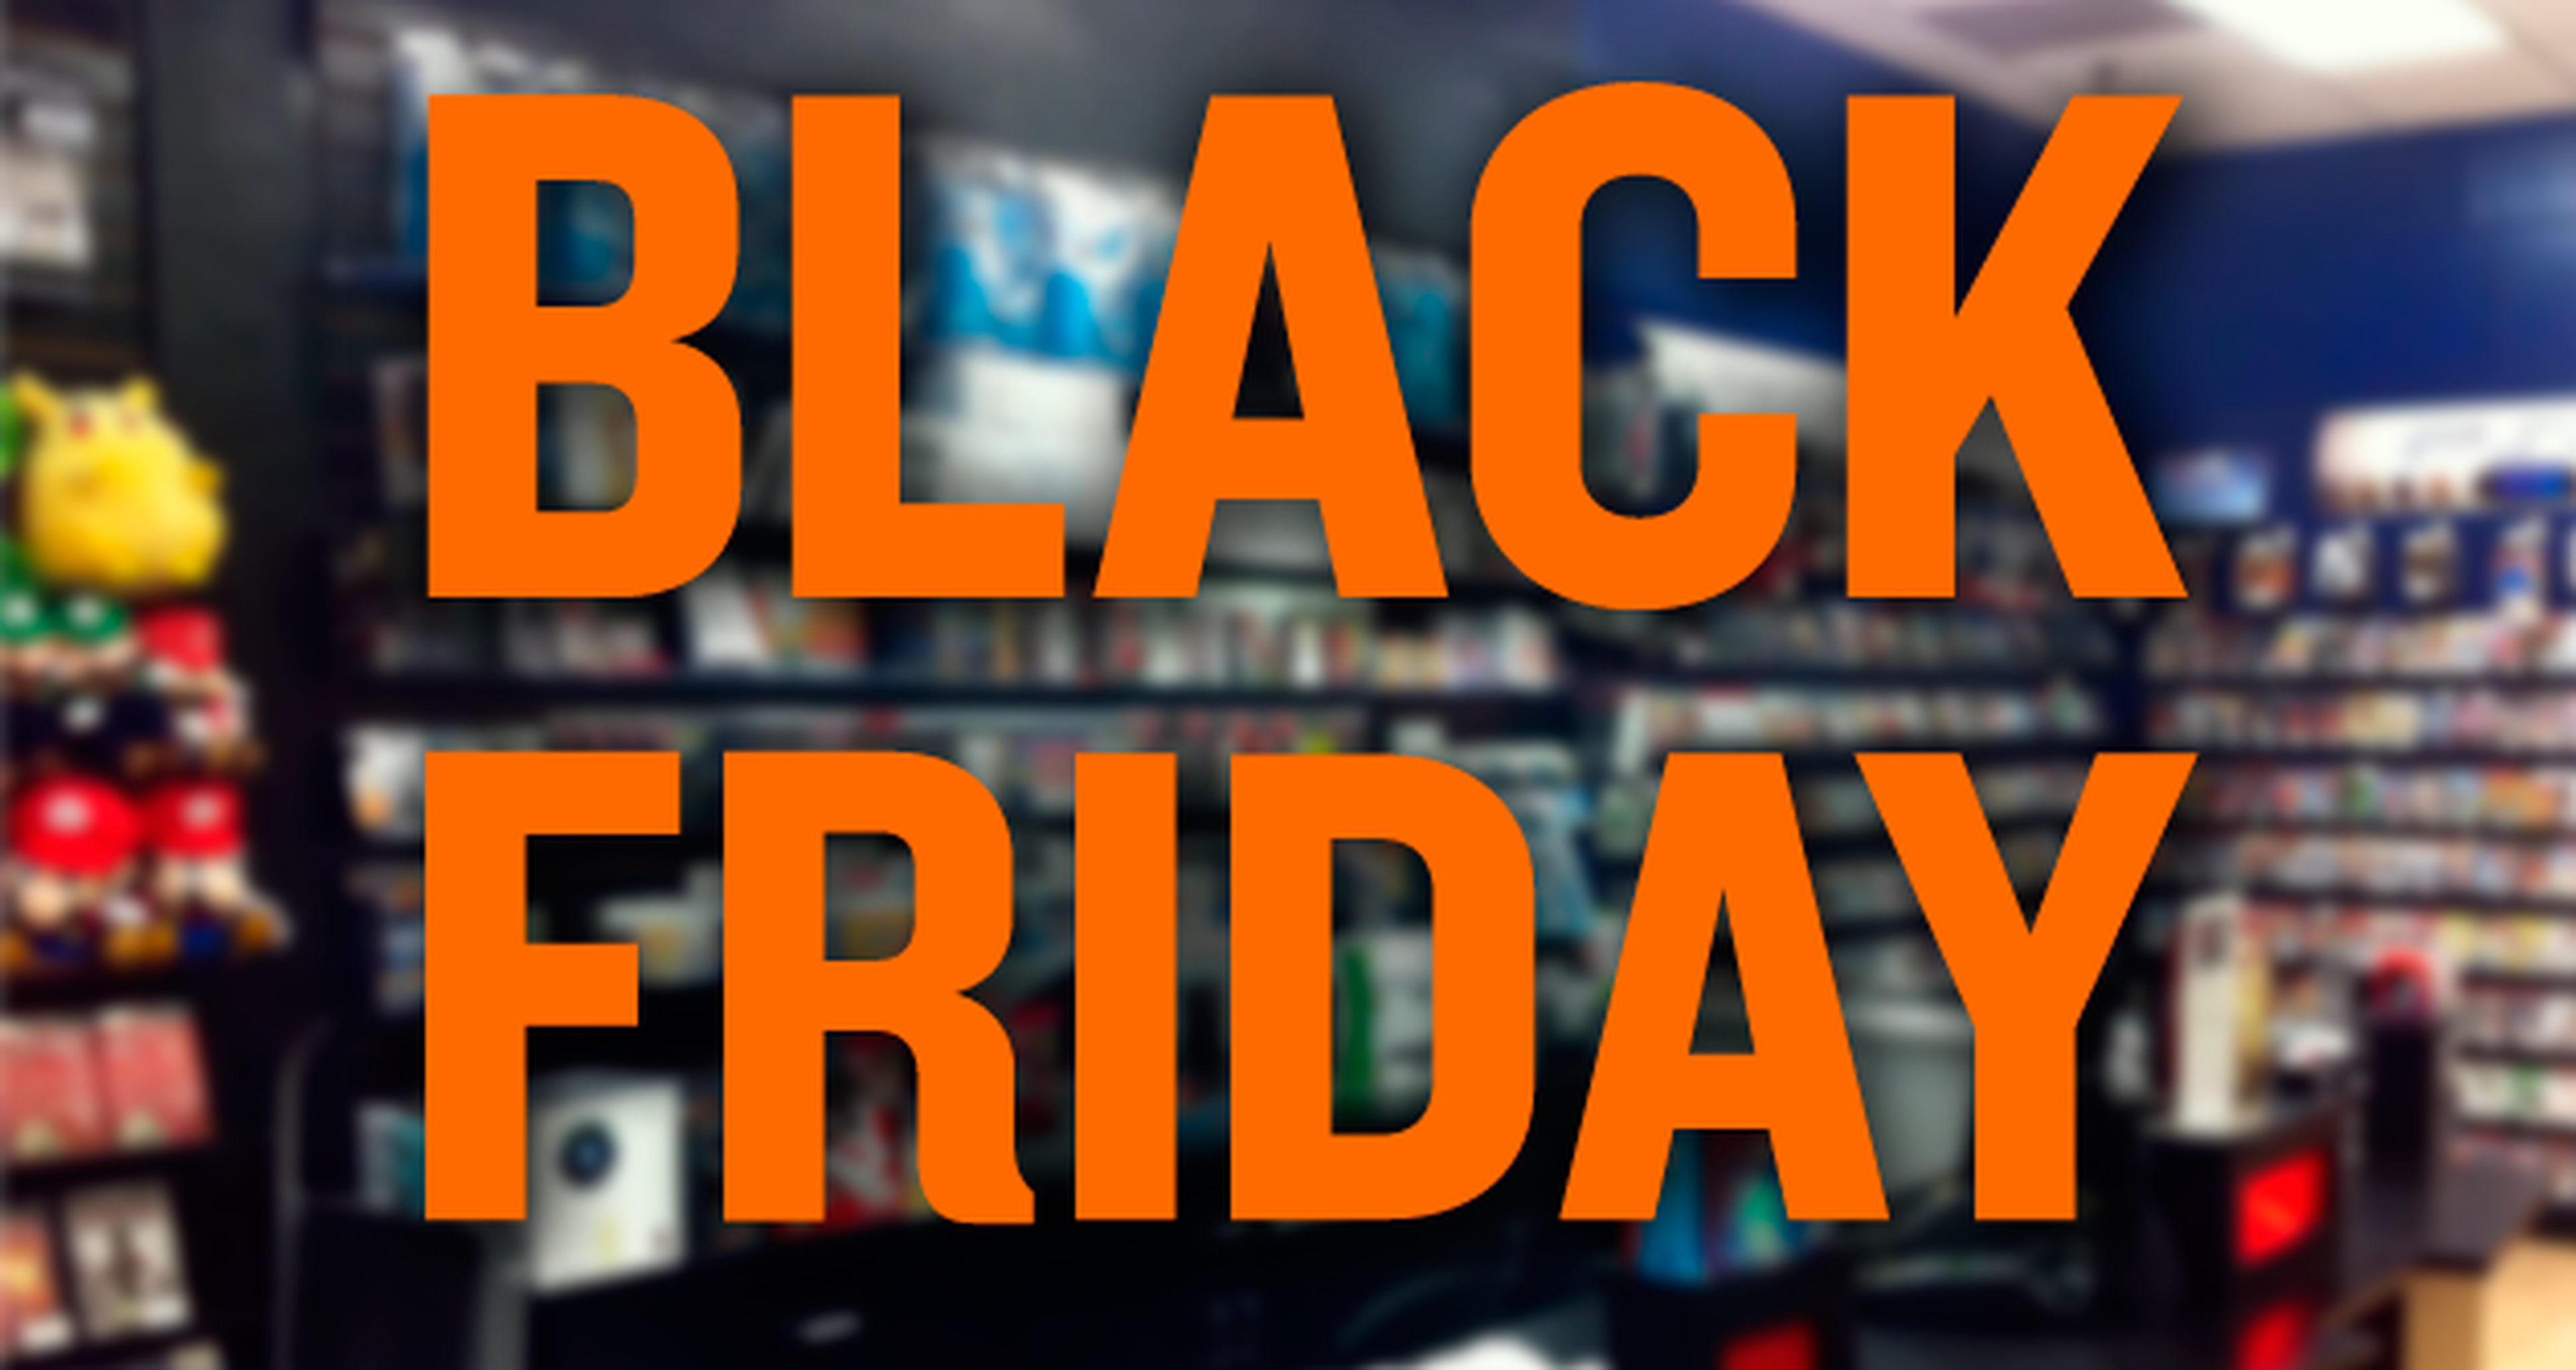 PS4 es el producto que más ingresos ha generado a Best Buy en el Black Friday